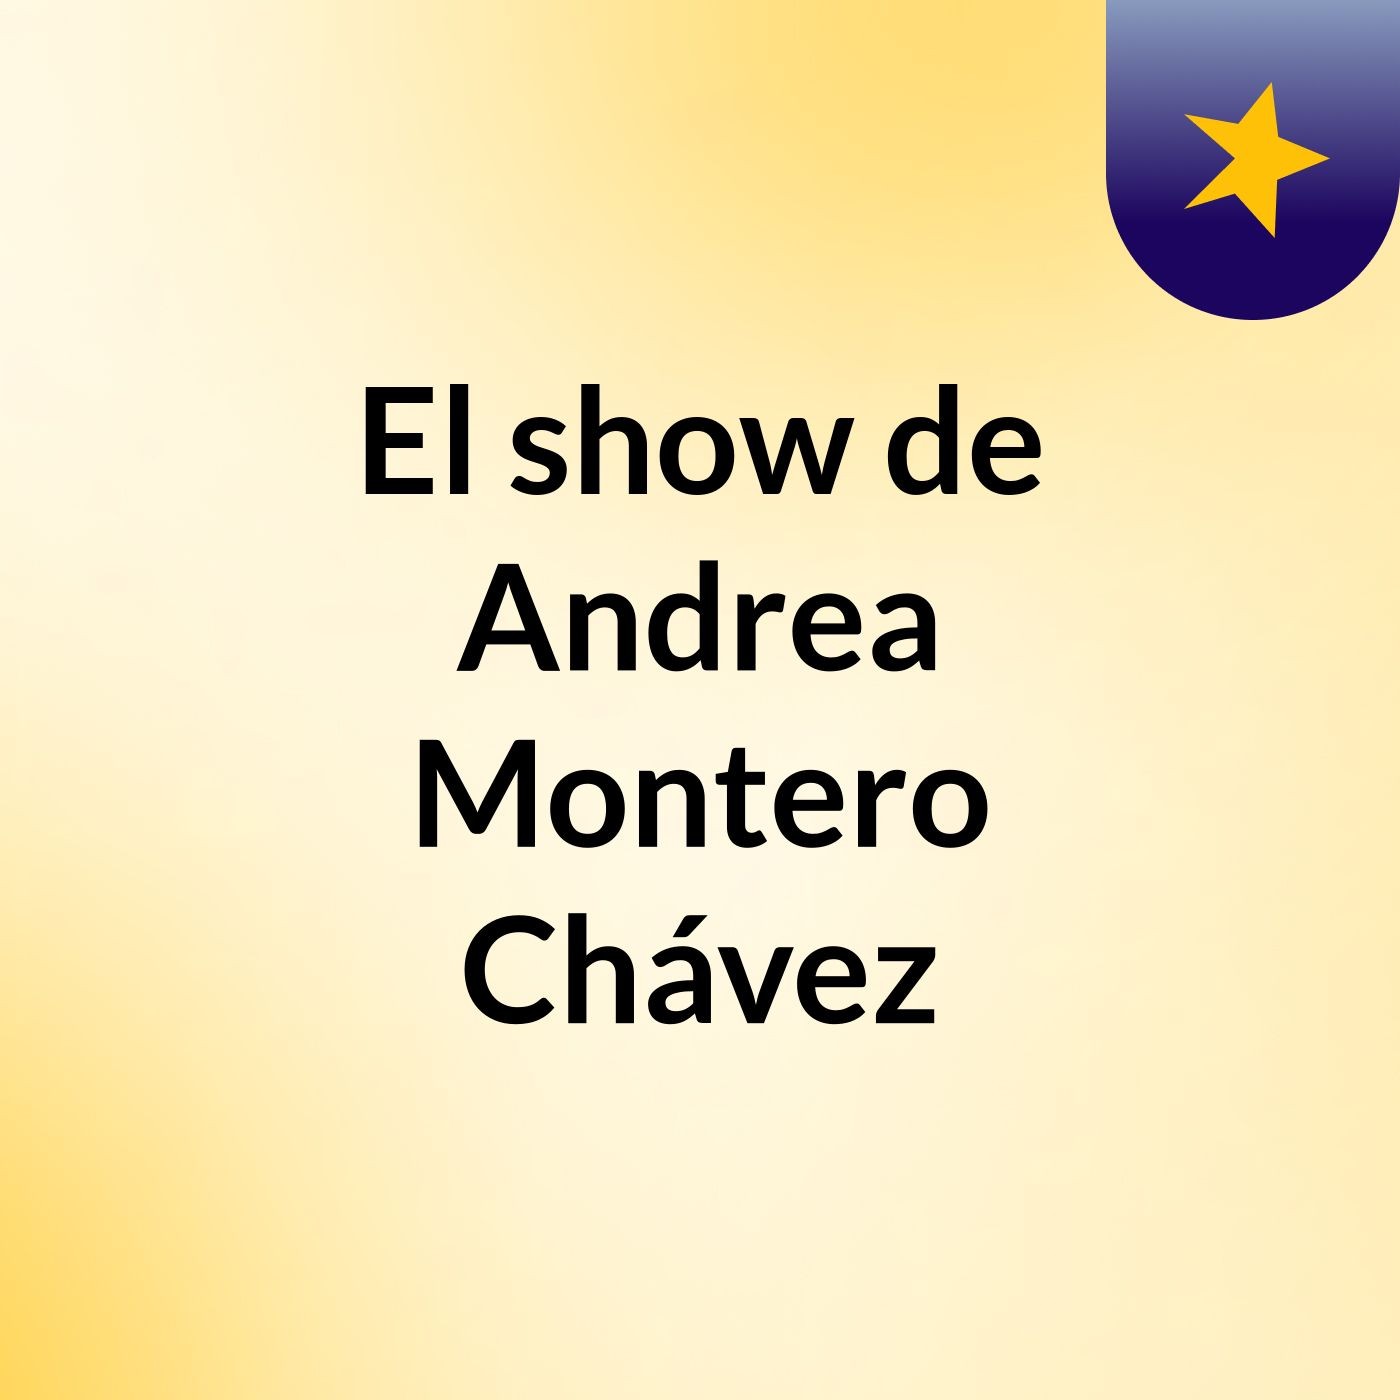 El show de Andrea Montero Chávez